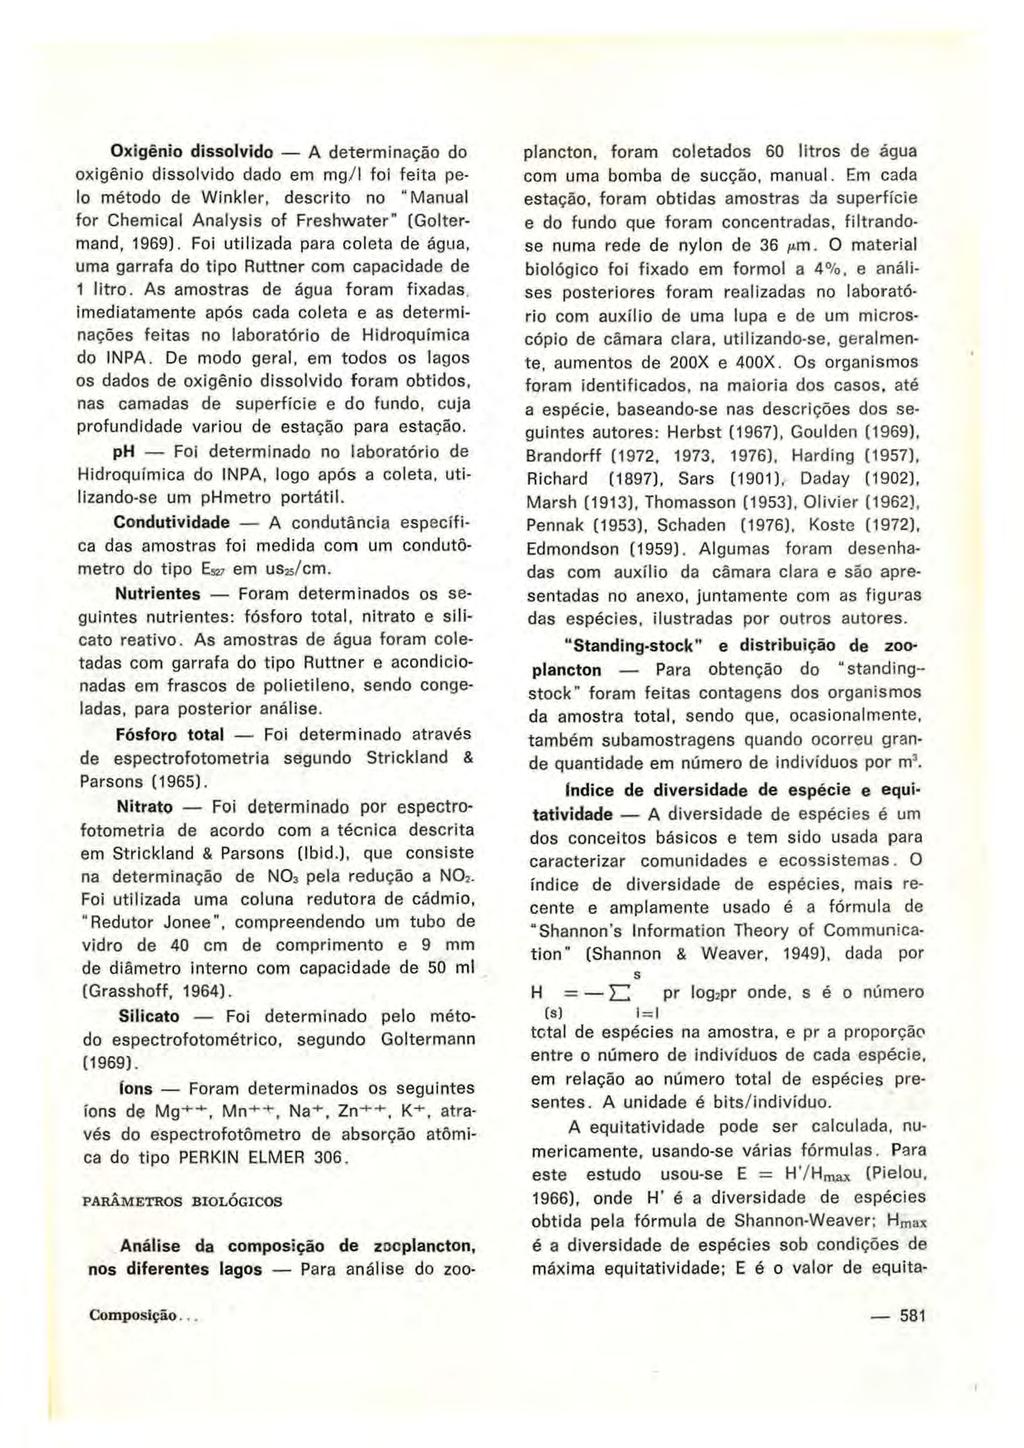 Oxigênio dissolvido A determinação do oxigênio dissolvido dado em mg/1 foi feita pelo método de Winkler, descrito no "Manual for Chemical Analysis of Freshwater" (Goitermand, 1969).